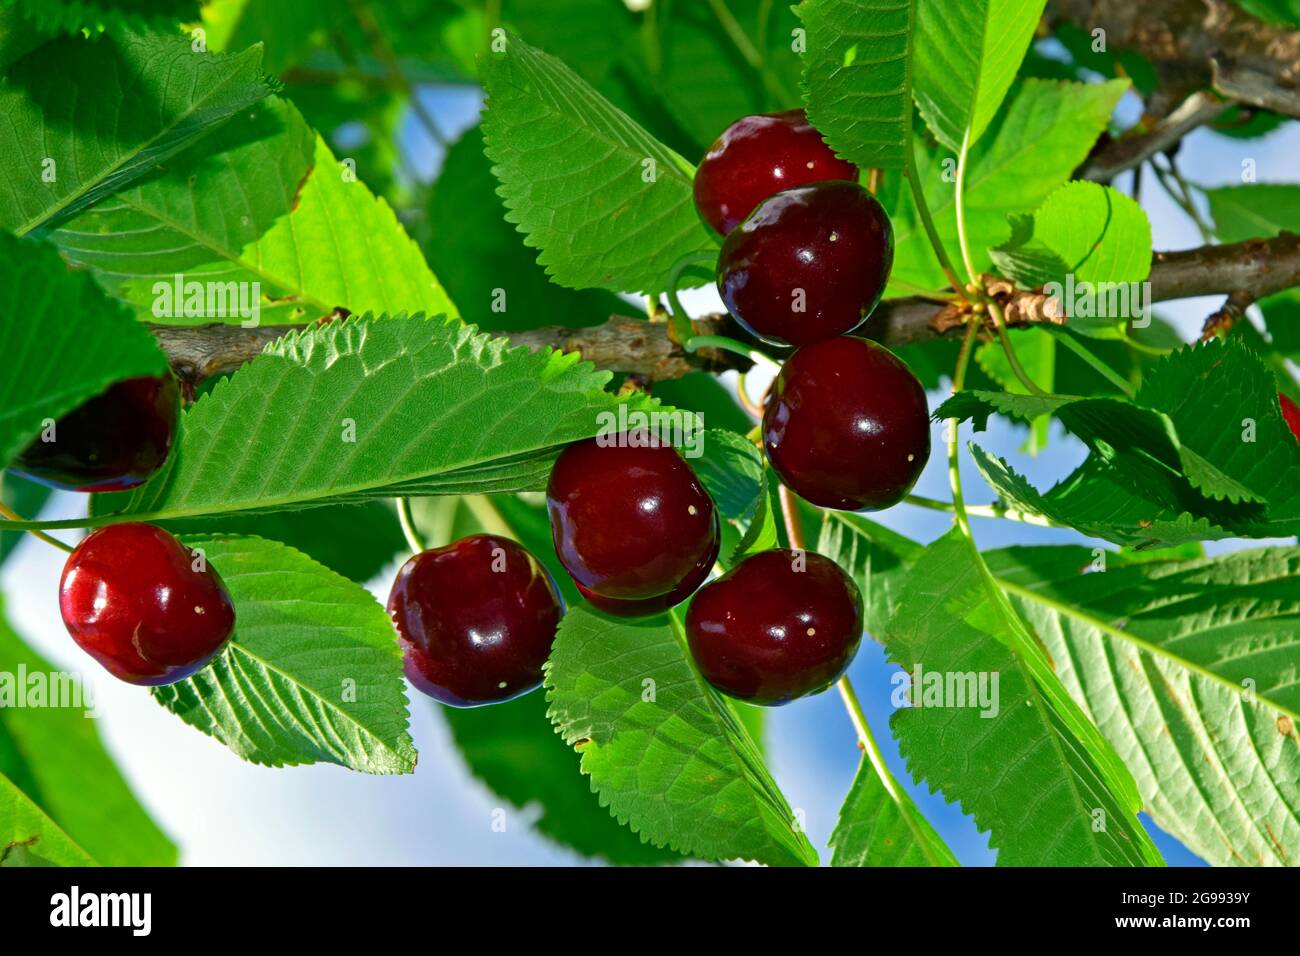 Ripening dark red cherries on tree, in closeup upwards view. Stock Photo